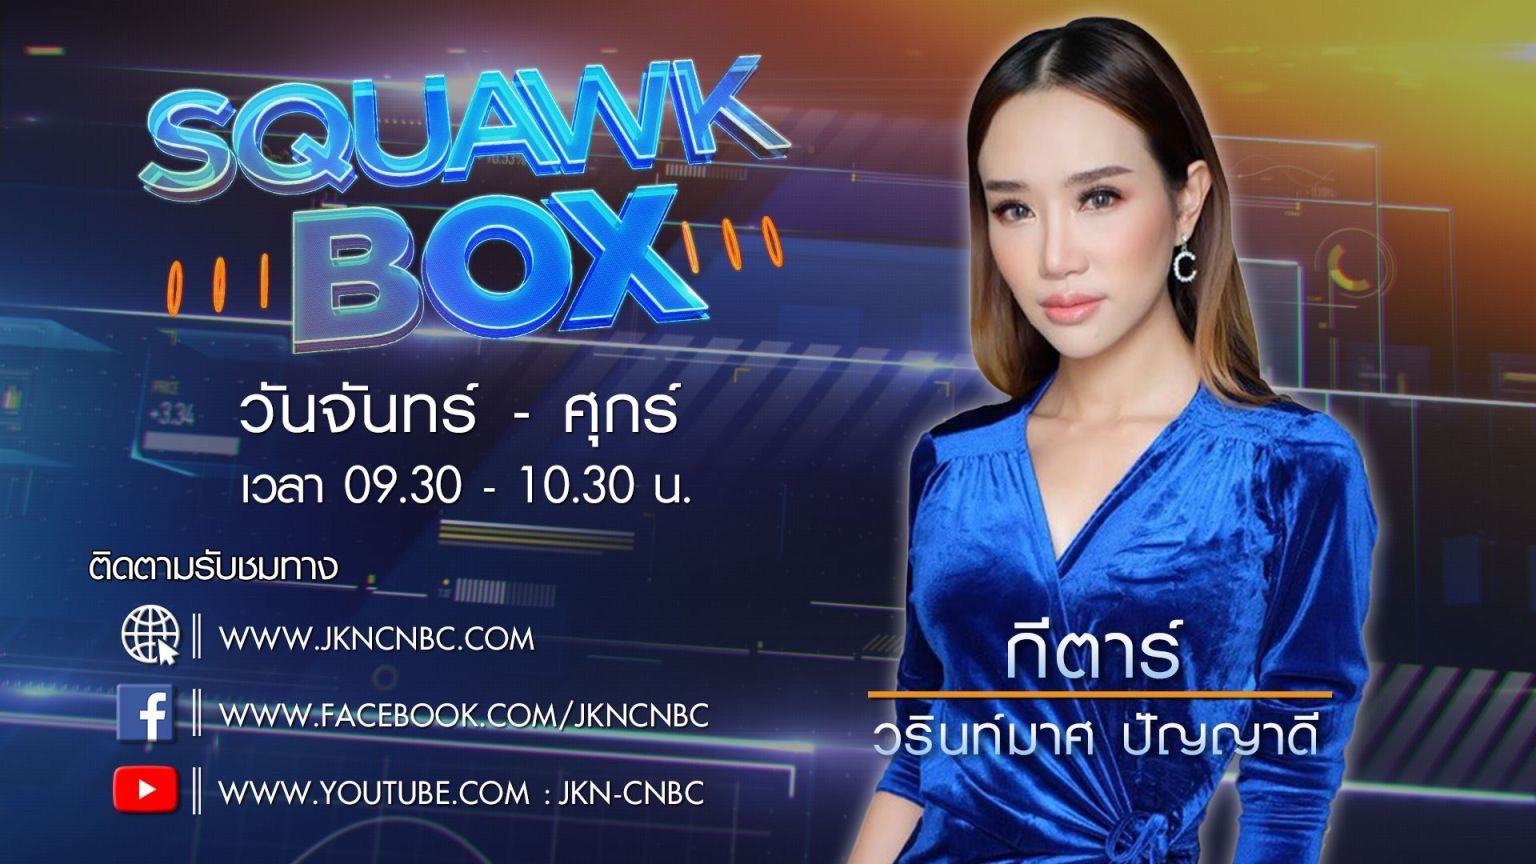 เจเคเอ็น คว้า กีตาร์ วรินท์มาศ ปัญญาดี แฟนพันธุ์แท้ CNBC International นั่งผู้ประกาศ JKN-CNBC ยกระดับข่าวเศรษฐกิจ การเงิน เมืองไทย มาตรฐานระดับโลก